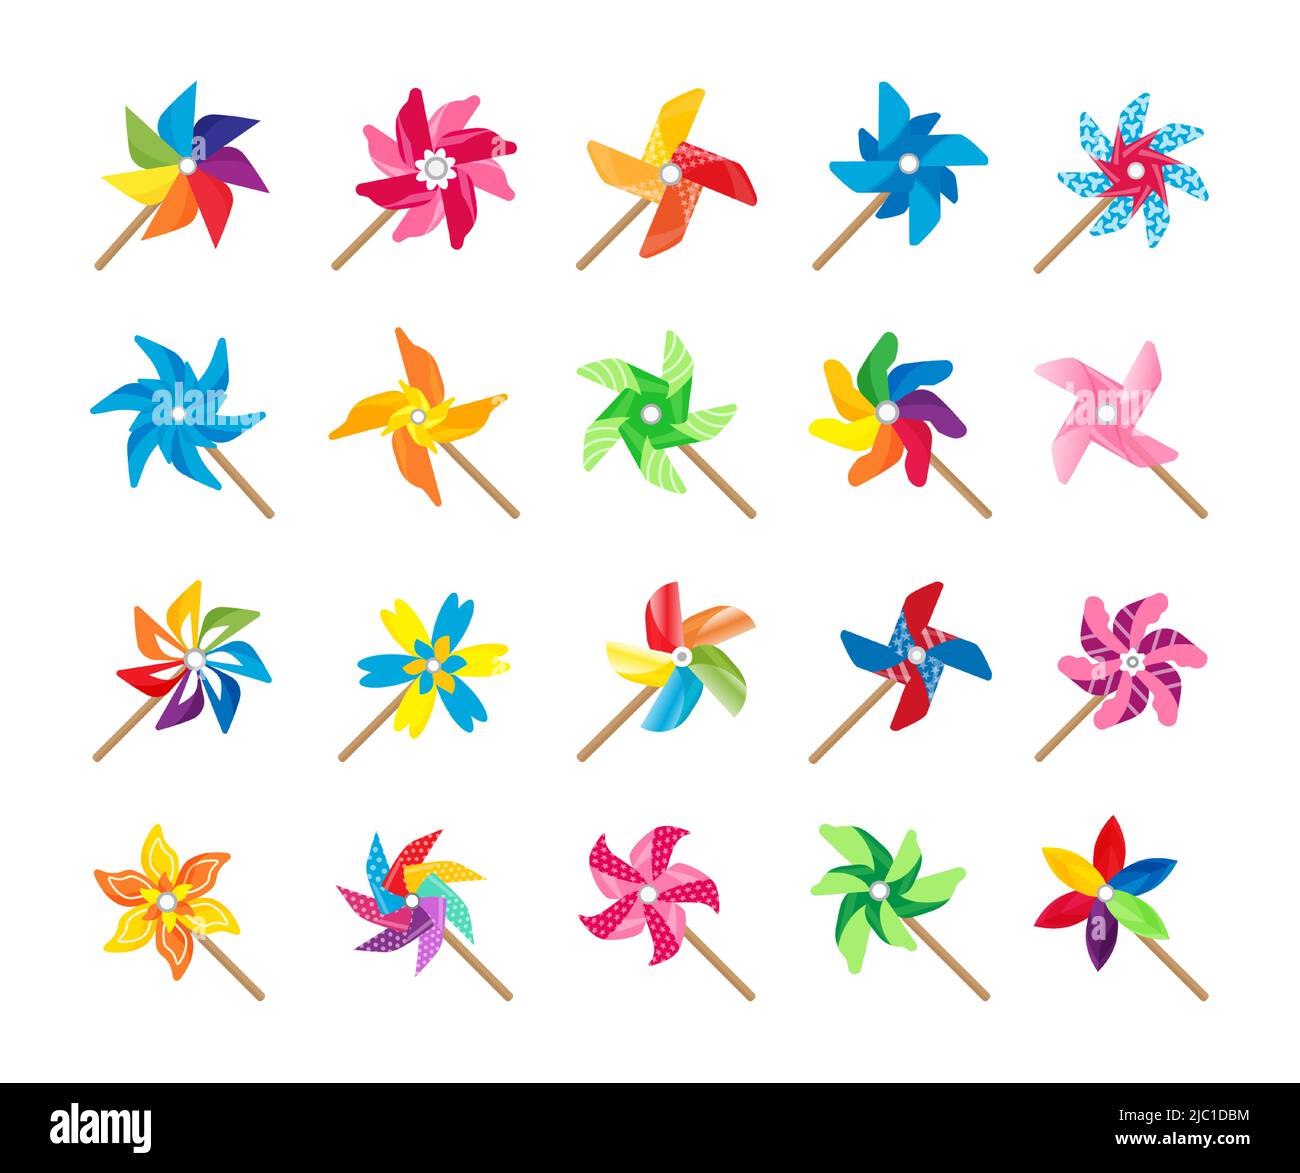 Giocattolo con ruota a spillo. Cartoon carta mulino a vento colorato bambino giocattolo ruotato da energia del vento, carino ruota pinned estate giocattolo collezione. Set di ventole Vector origami Illustrazione Vettoriale